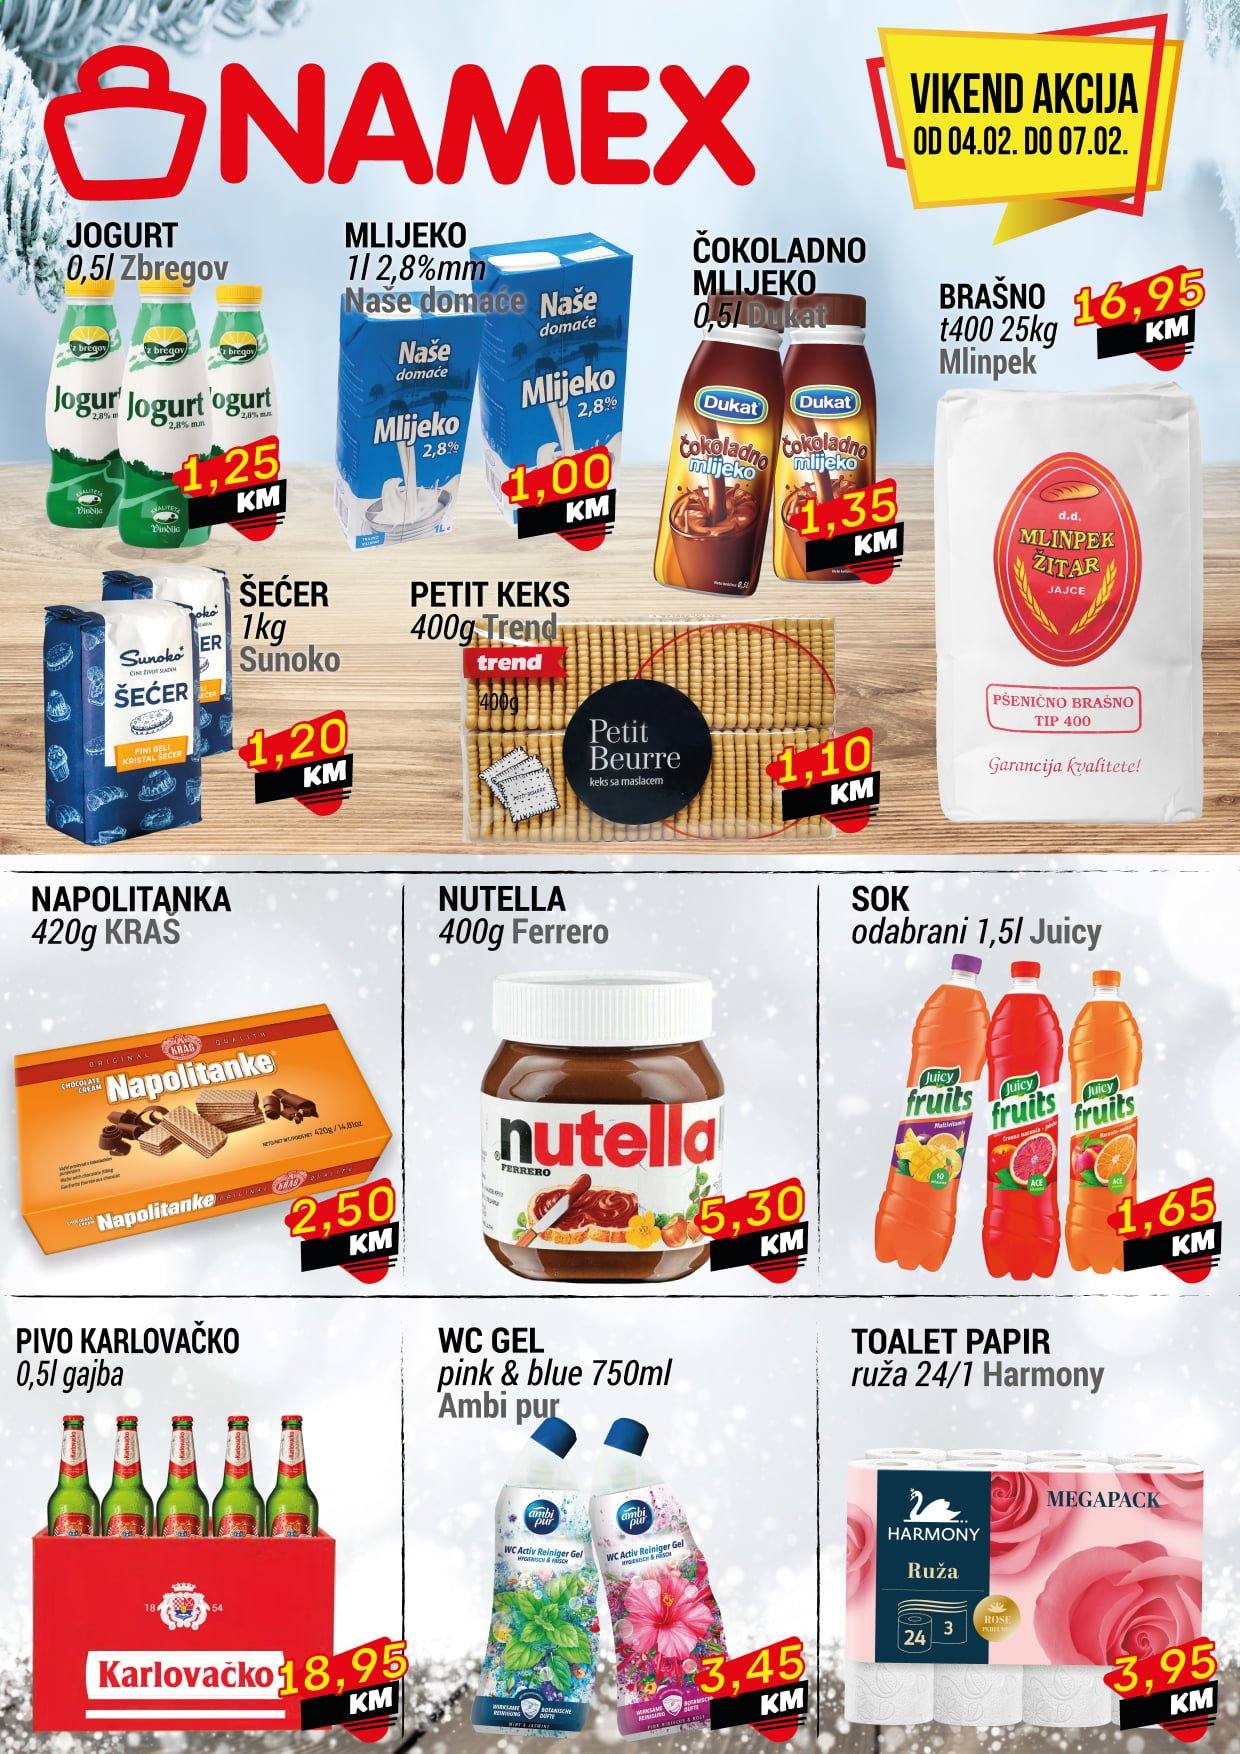 thumbnail - Namex katalog - 04.02.2021. - 07.02.2021. - Sniženi proizvodi - pivo, jogurt, Ferrero Rocher, keks, Nutella, napolitanke, Juicy, sok, Ambi Pur. Stranica 2.